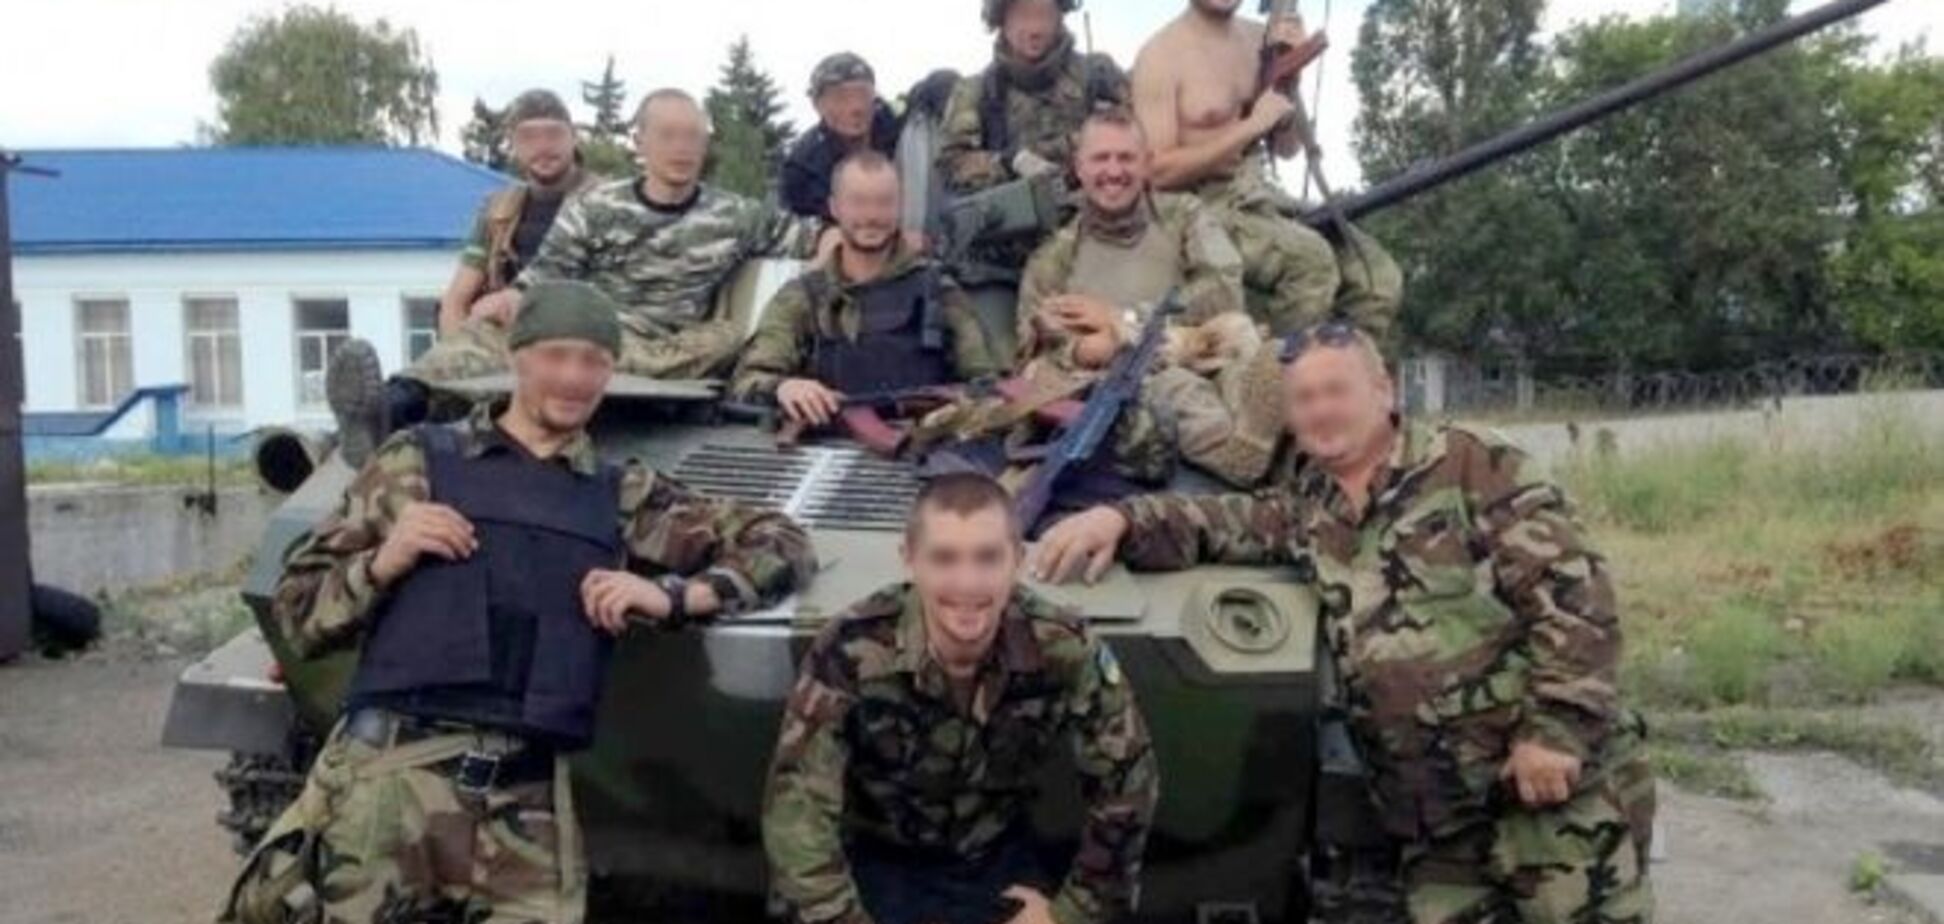 СМИ: главным гаишником Одесщины стал бывший офицер 'Шторма'